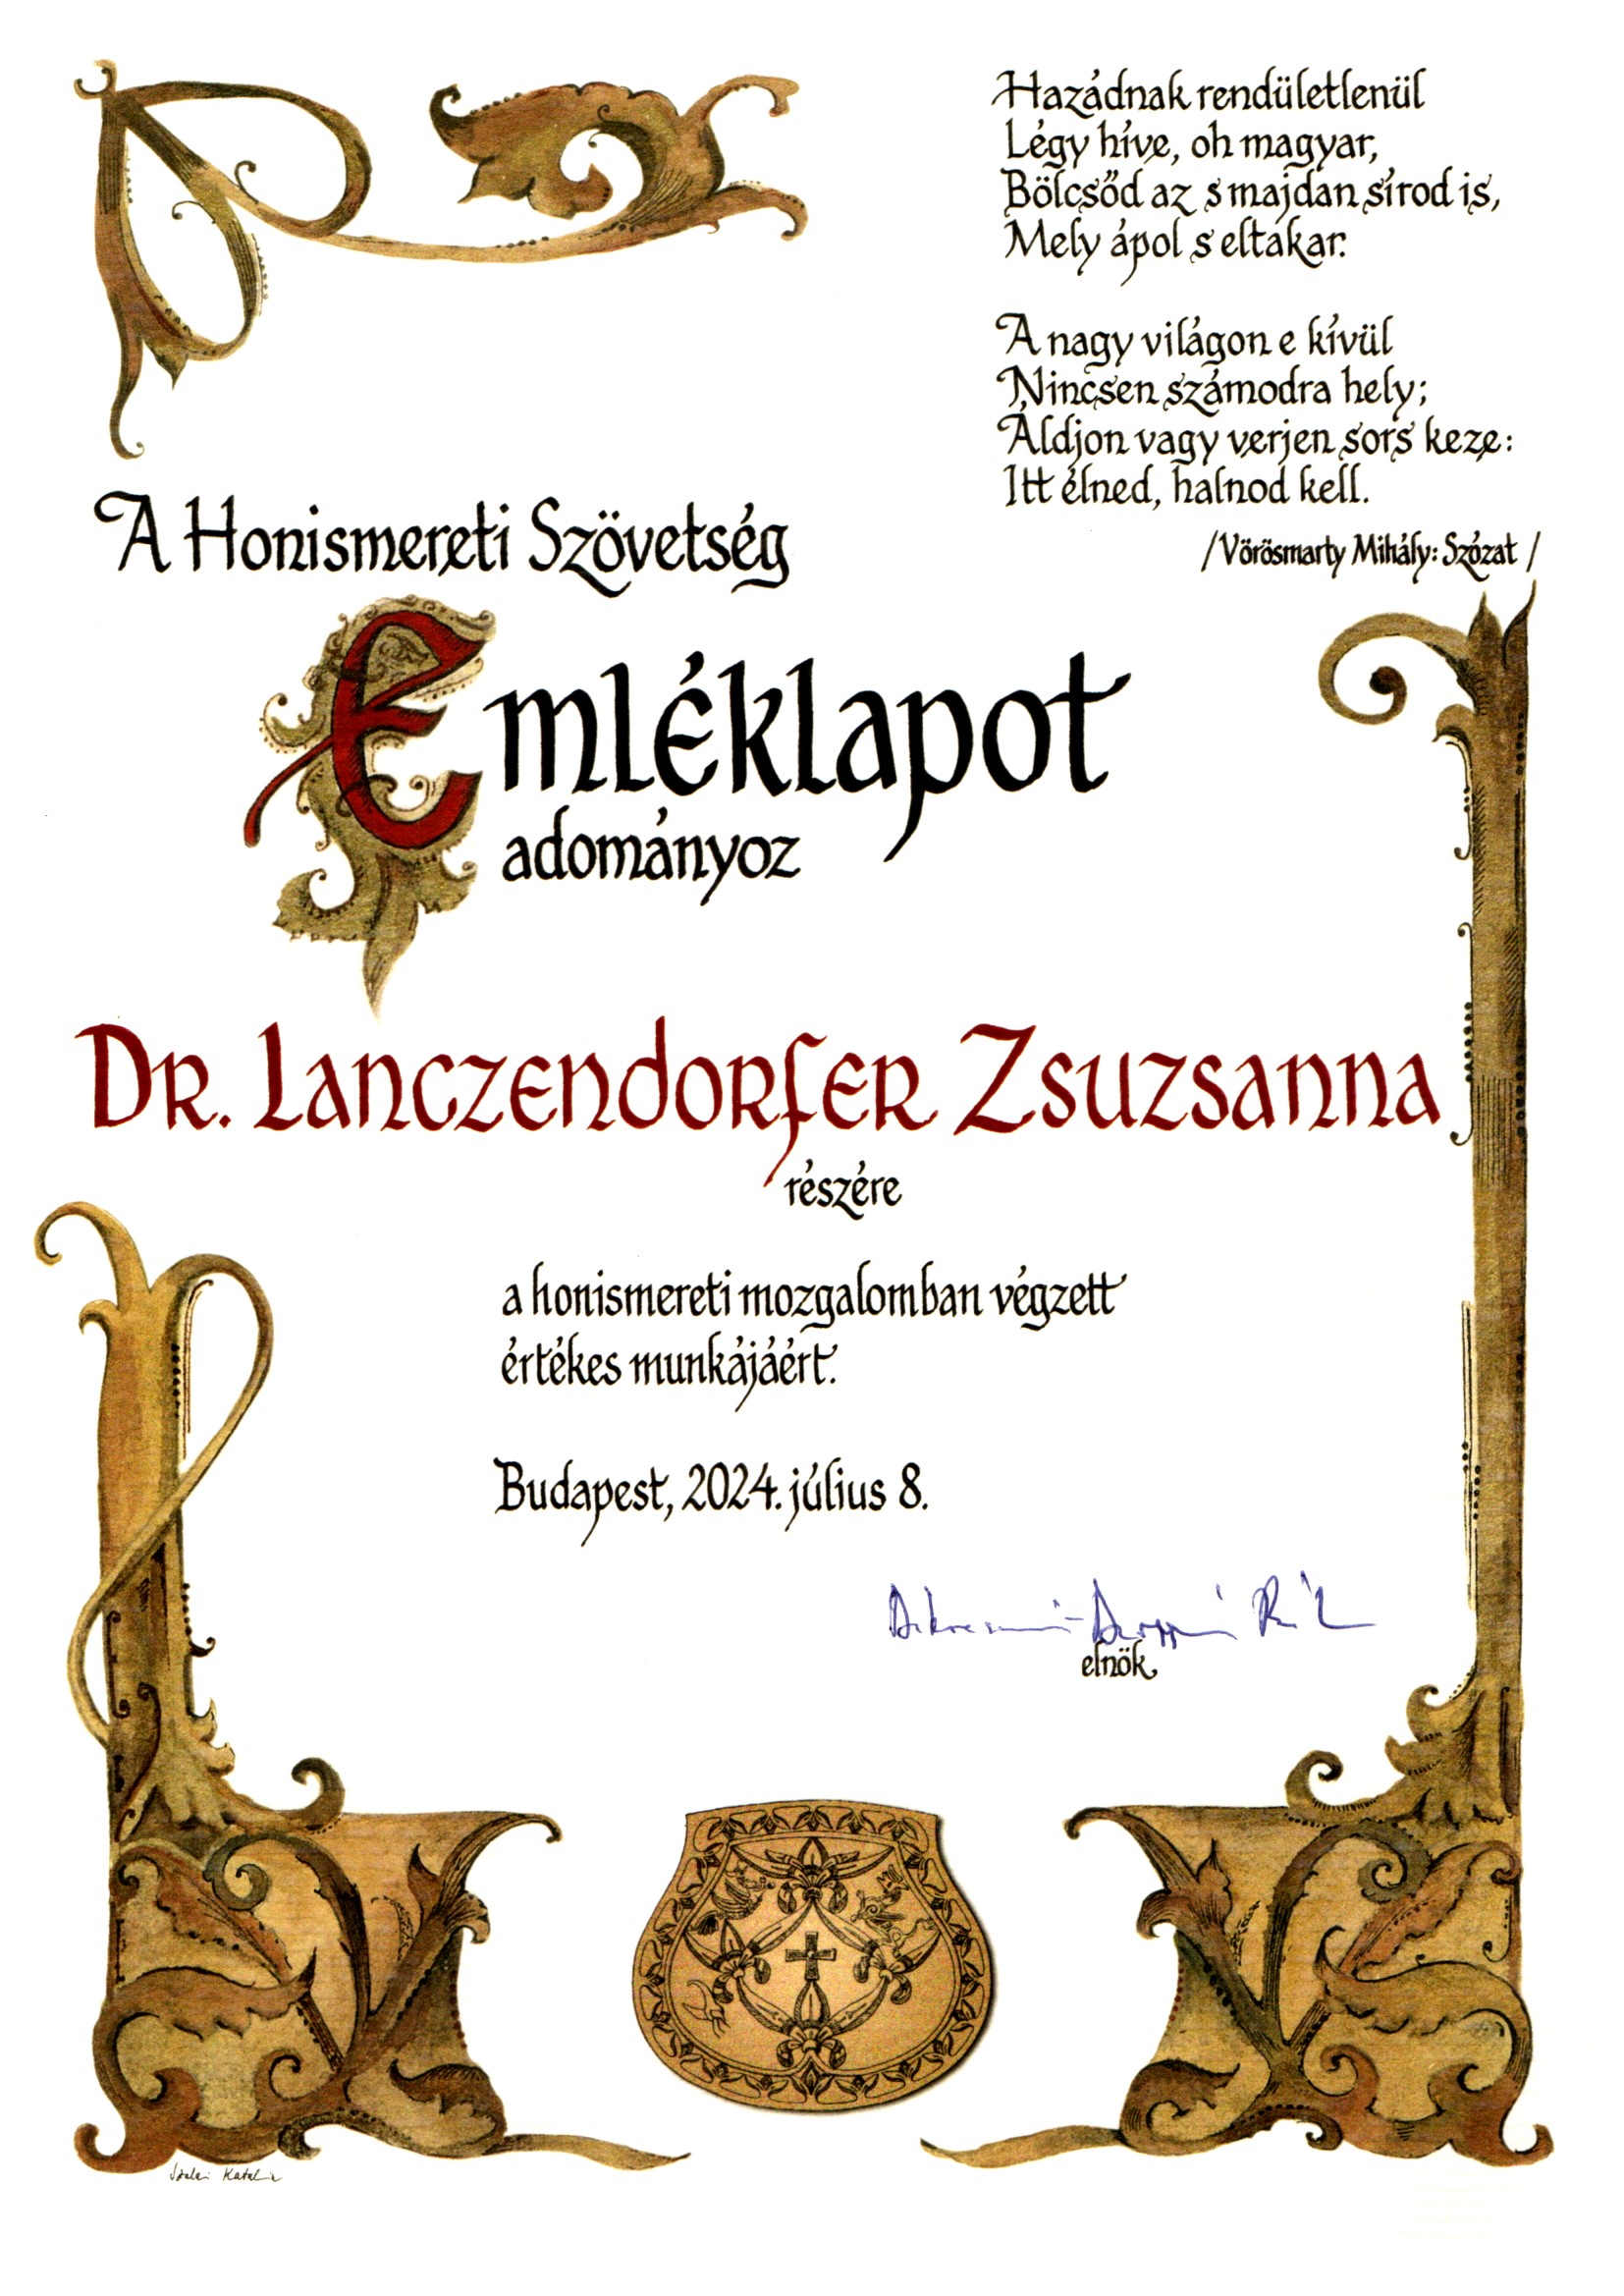 Dr. Lanczendorfer Zsuzsanna egyetemi docens Honismereti Szövetség Emléklapot vett át